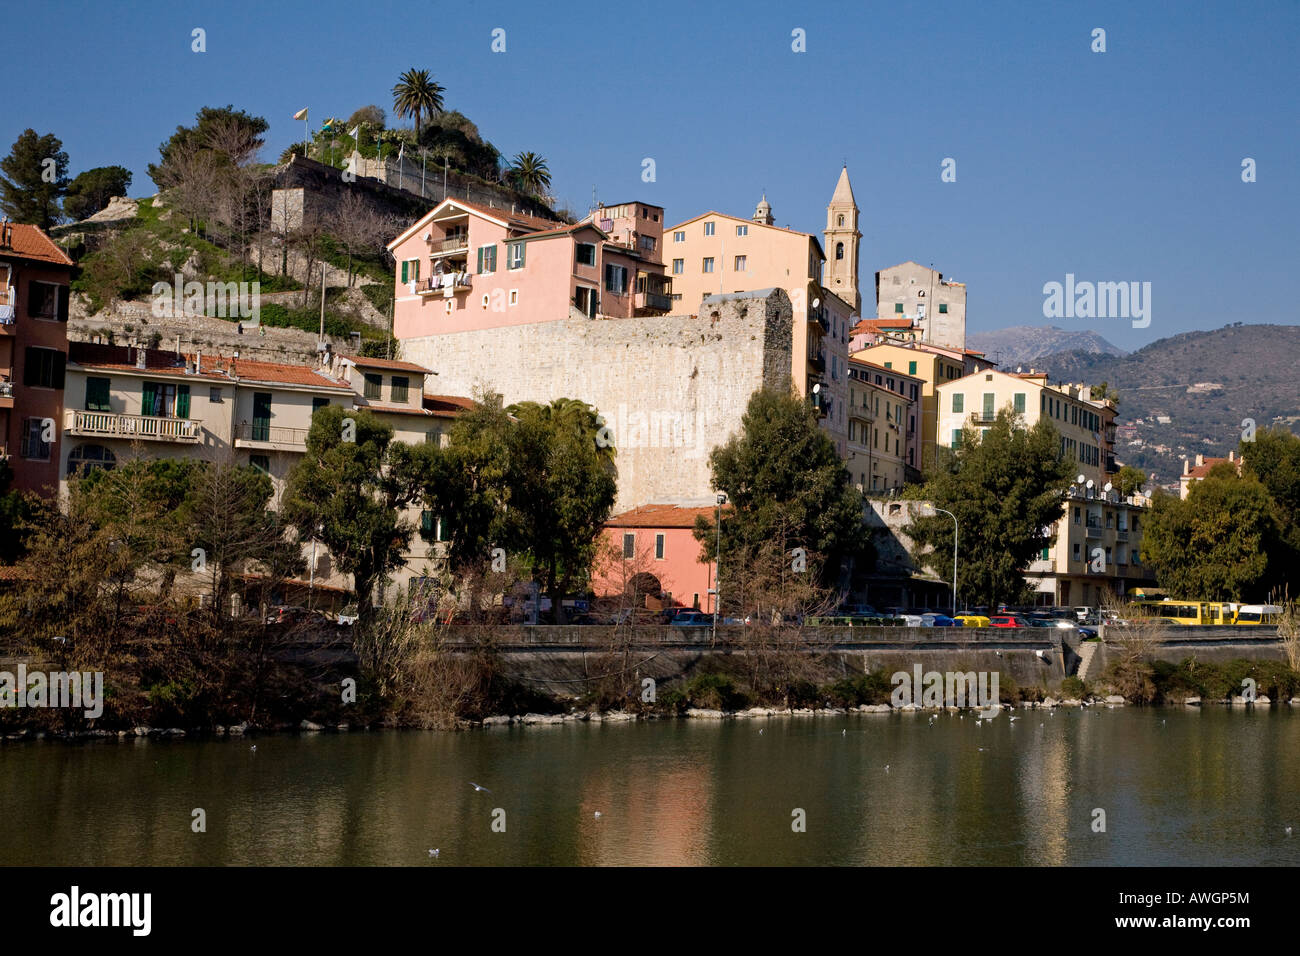 The Centro Storico of Ventimiglia above the River Roya Stock Photo